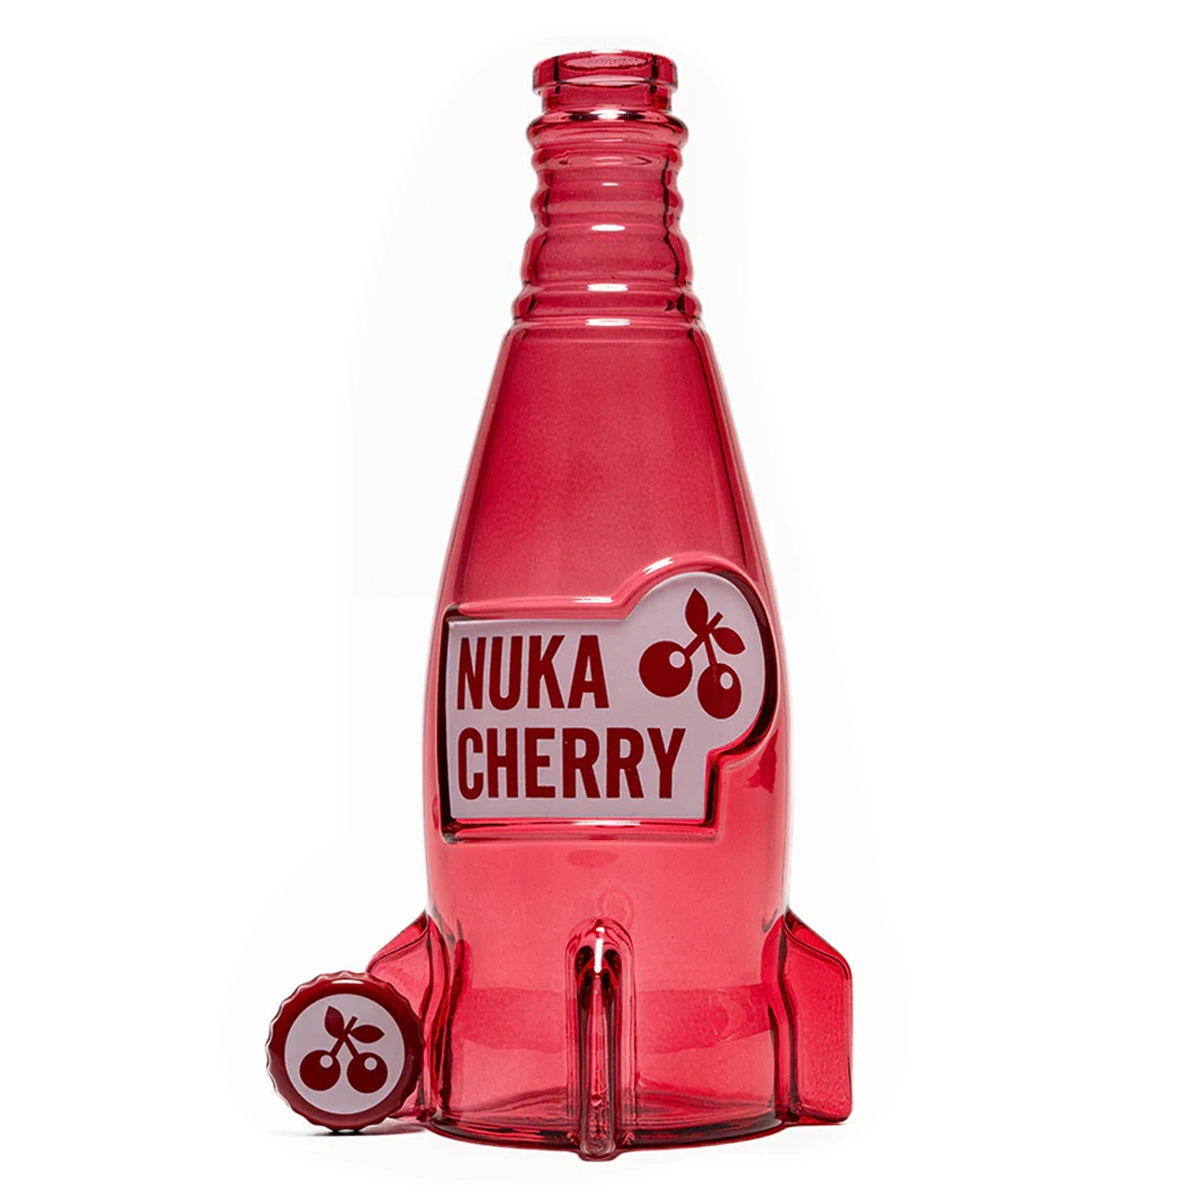 Fallout "Nuka Cola Cherry" Glasflasche und Kronkorken Image 2